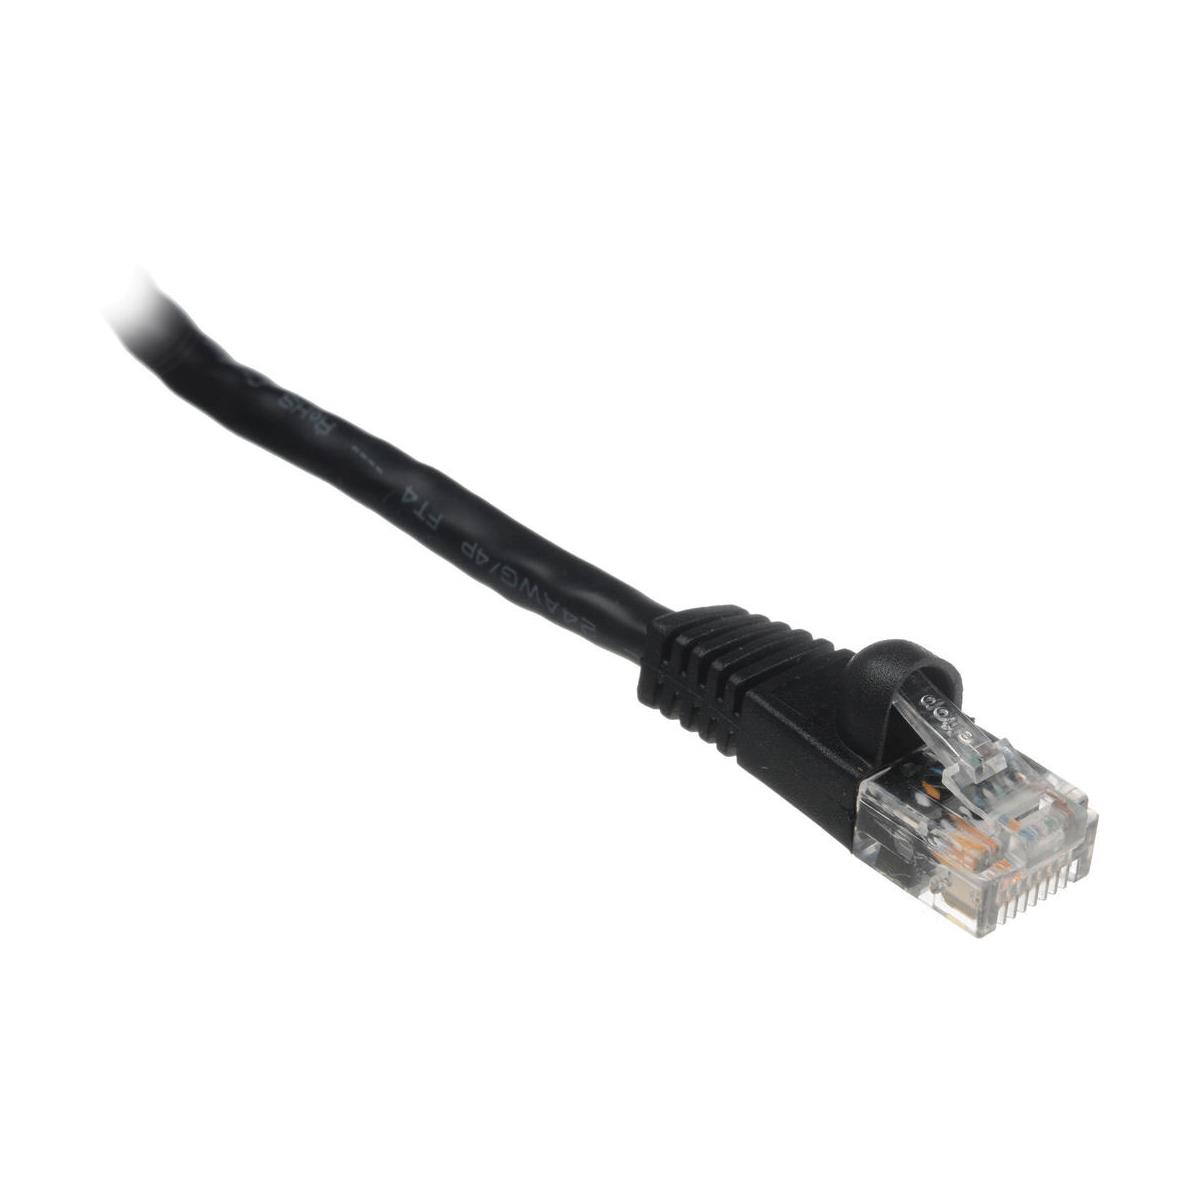 Комплексный соединительный кабель Cat6 550 МГц длиной 7 футов без зацепов, черный #CAT6-7BLK